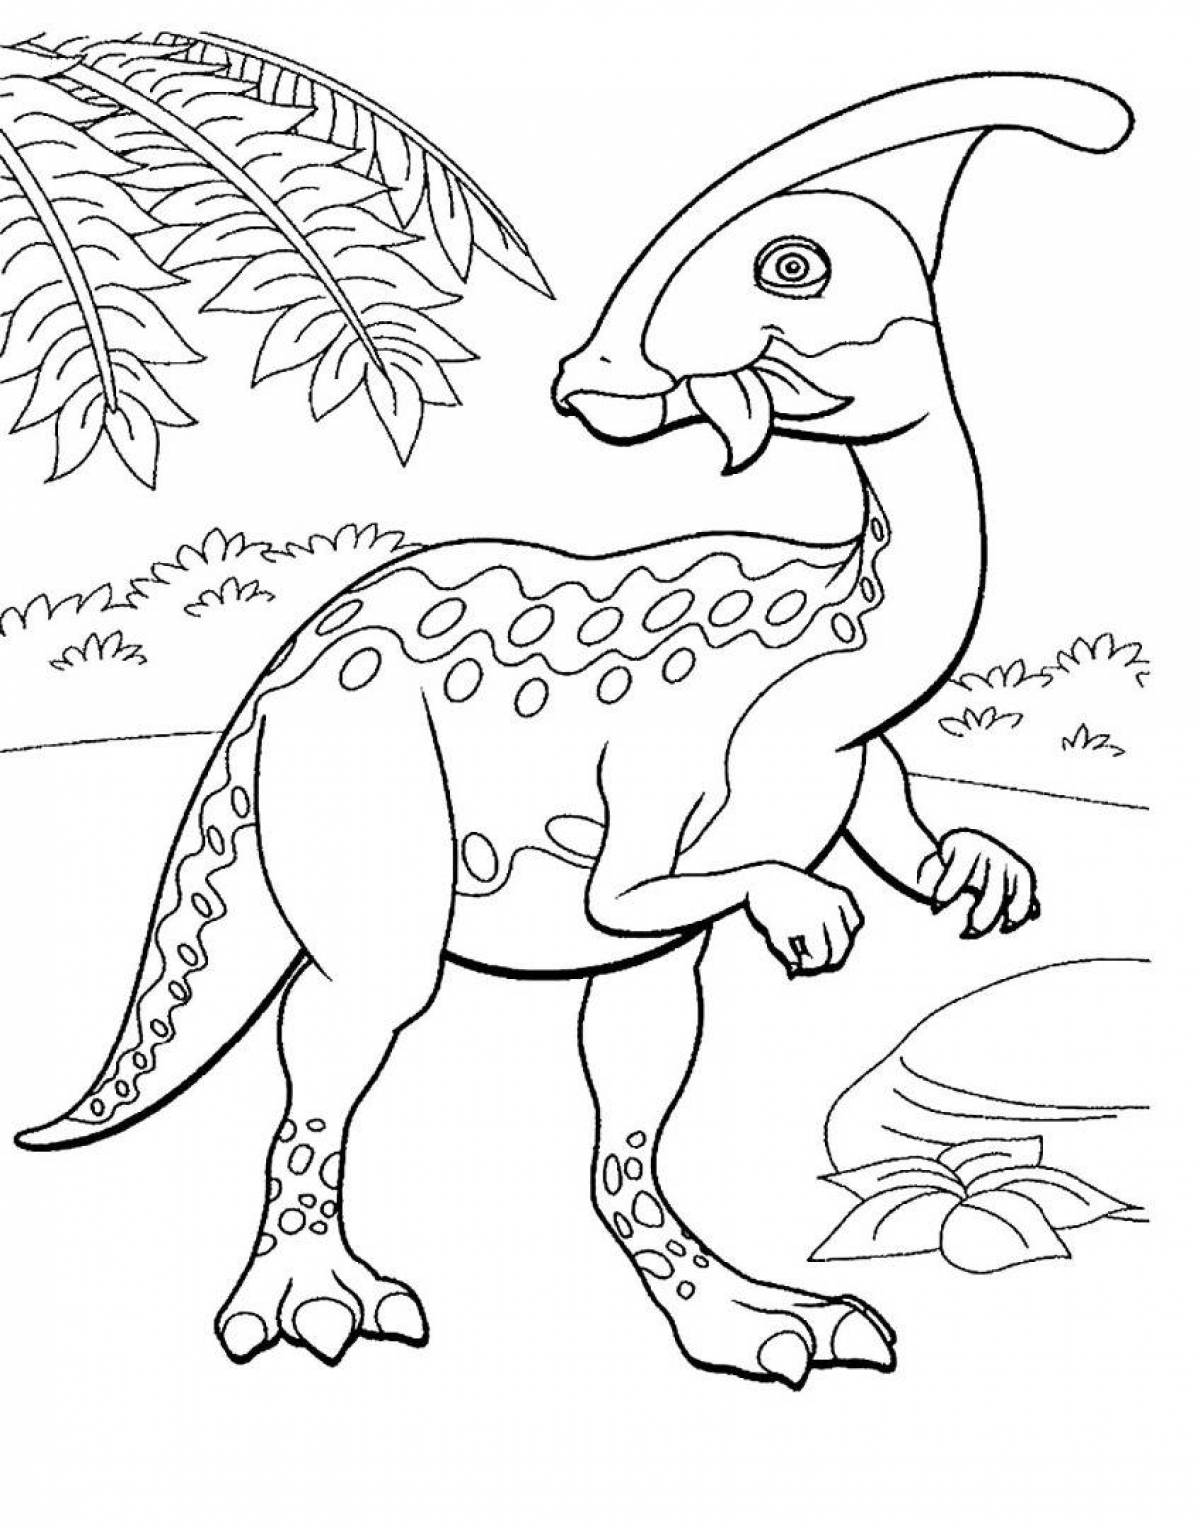 Динозавр раскраска распечатать а4. Дино раскраска динозавры. Перри Паразауролоф. Динозавр раскраска для детей. Динозаврики раскраска для детей.